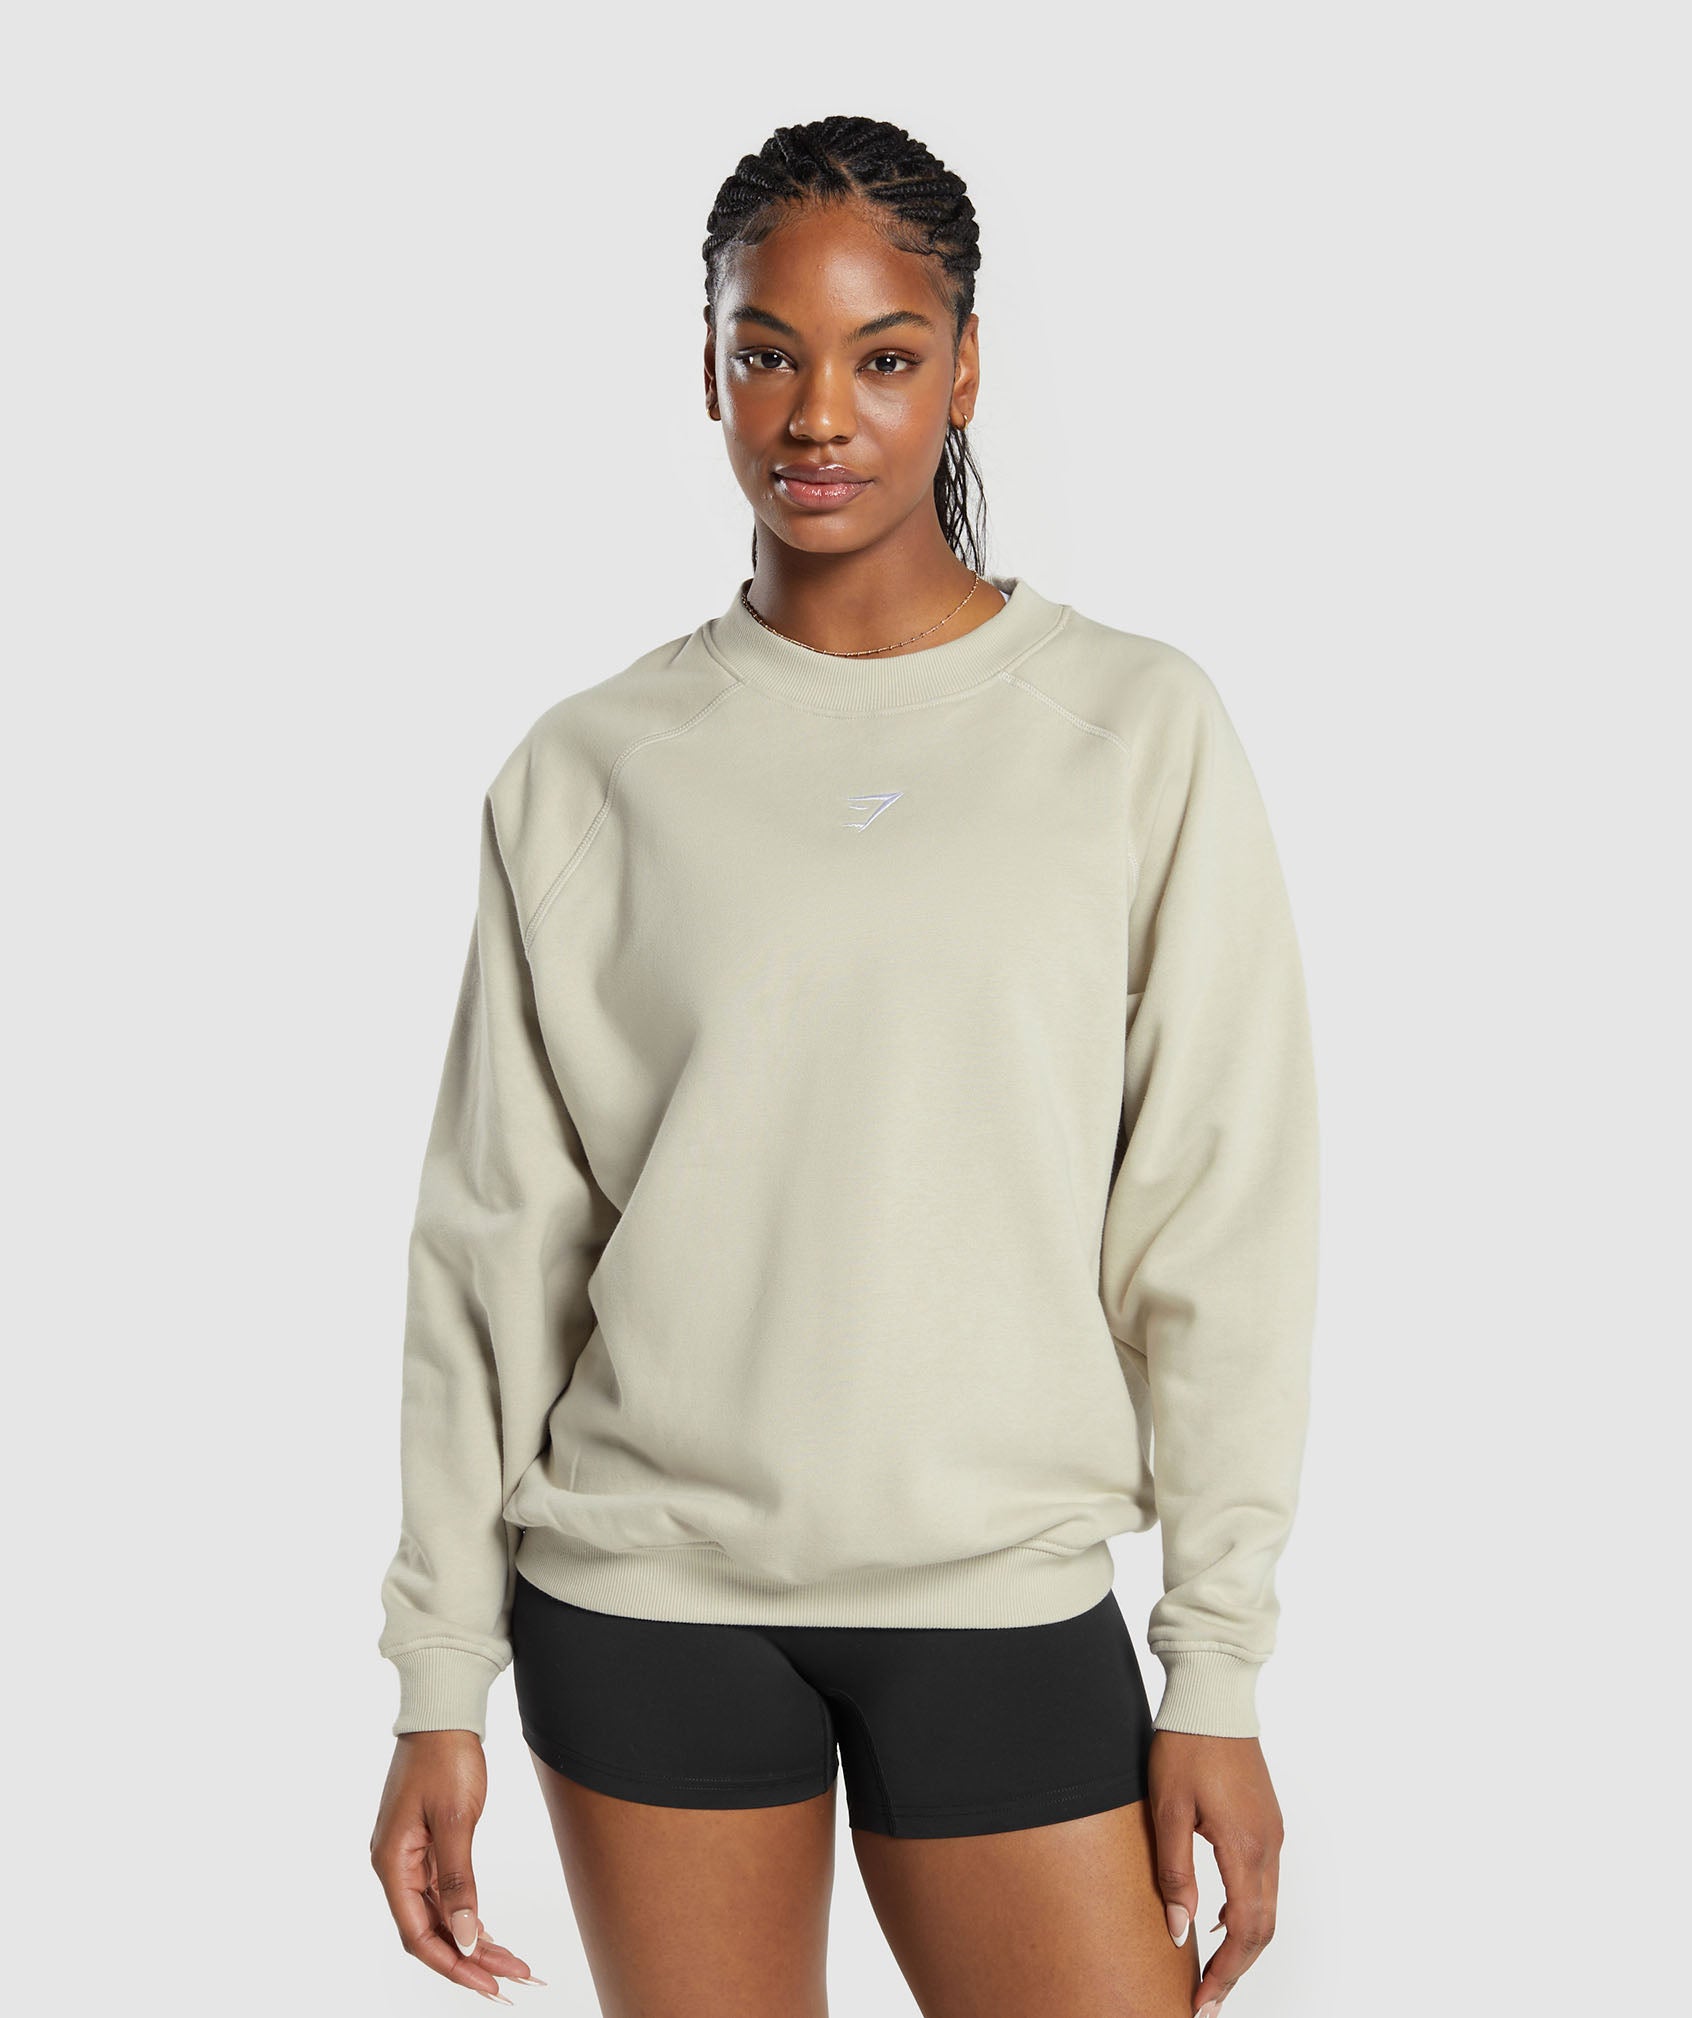 Training Oversized Fleece Sweatshirt in Pebble Grey is out of stock